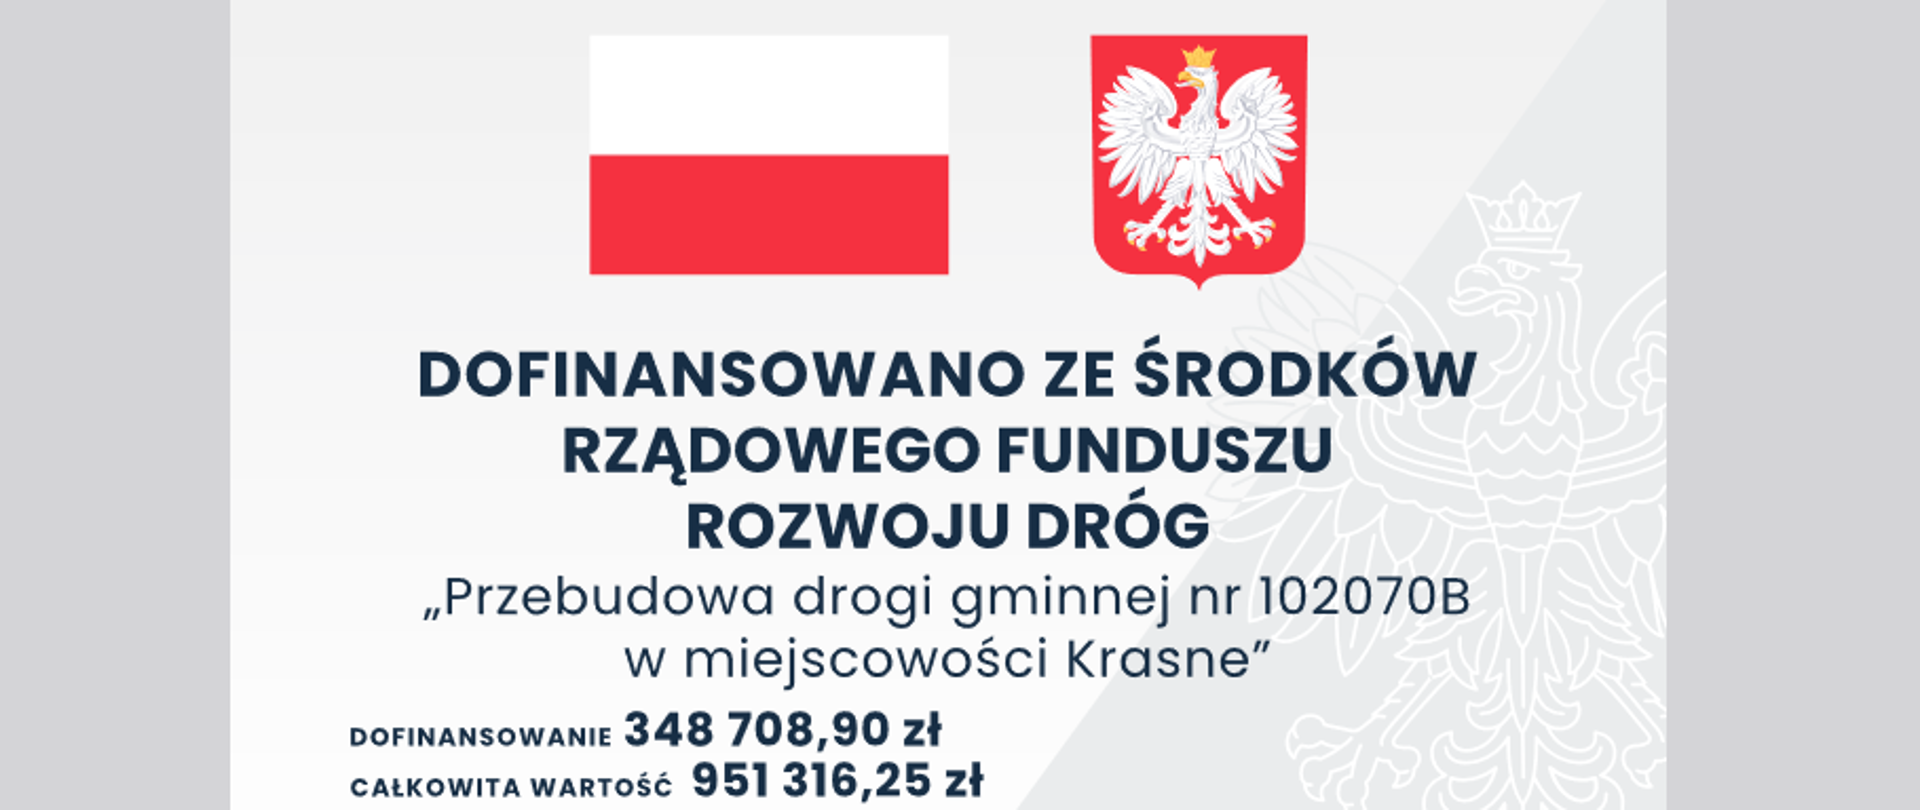 Tablica w kolorze biało-szarym, znak wodny orła, na górze po lewej stronie flaga Polski, po prawej godło, niżej napis "Dofinansowano ze środków Rządowego Rozwoju Dróg", poniżej napis: Przebudowa drogi gminnej nr 102070B w miejscowości Krasne. Całkowita wartość 951 316,25 zł, wysokość dofinansowania zadania to: 348 708,90 zł.